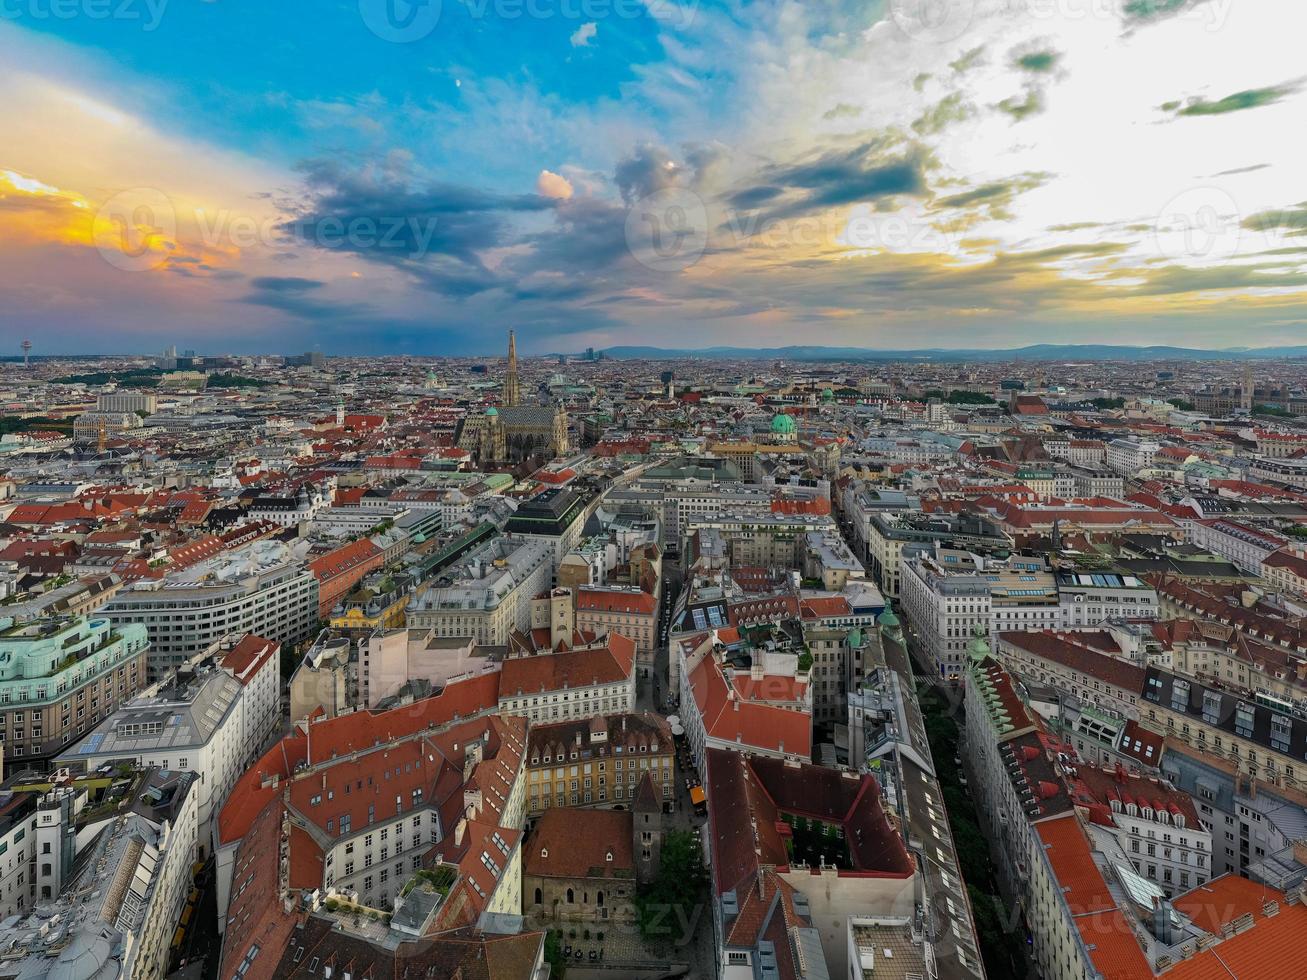 Wenen, Oostenrijk - jul 18, 2021, visie van de Wenen horizon met st. stephen's kathedraal Wenen, Oostenrijk foto